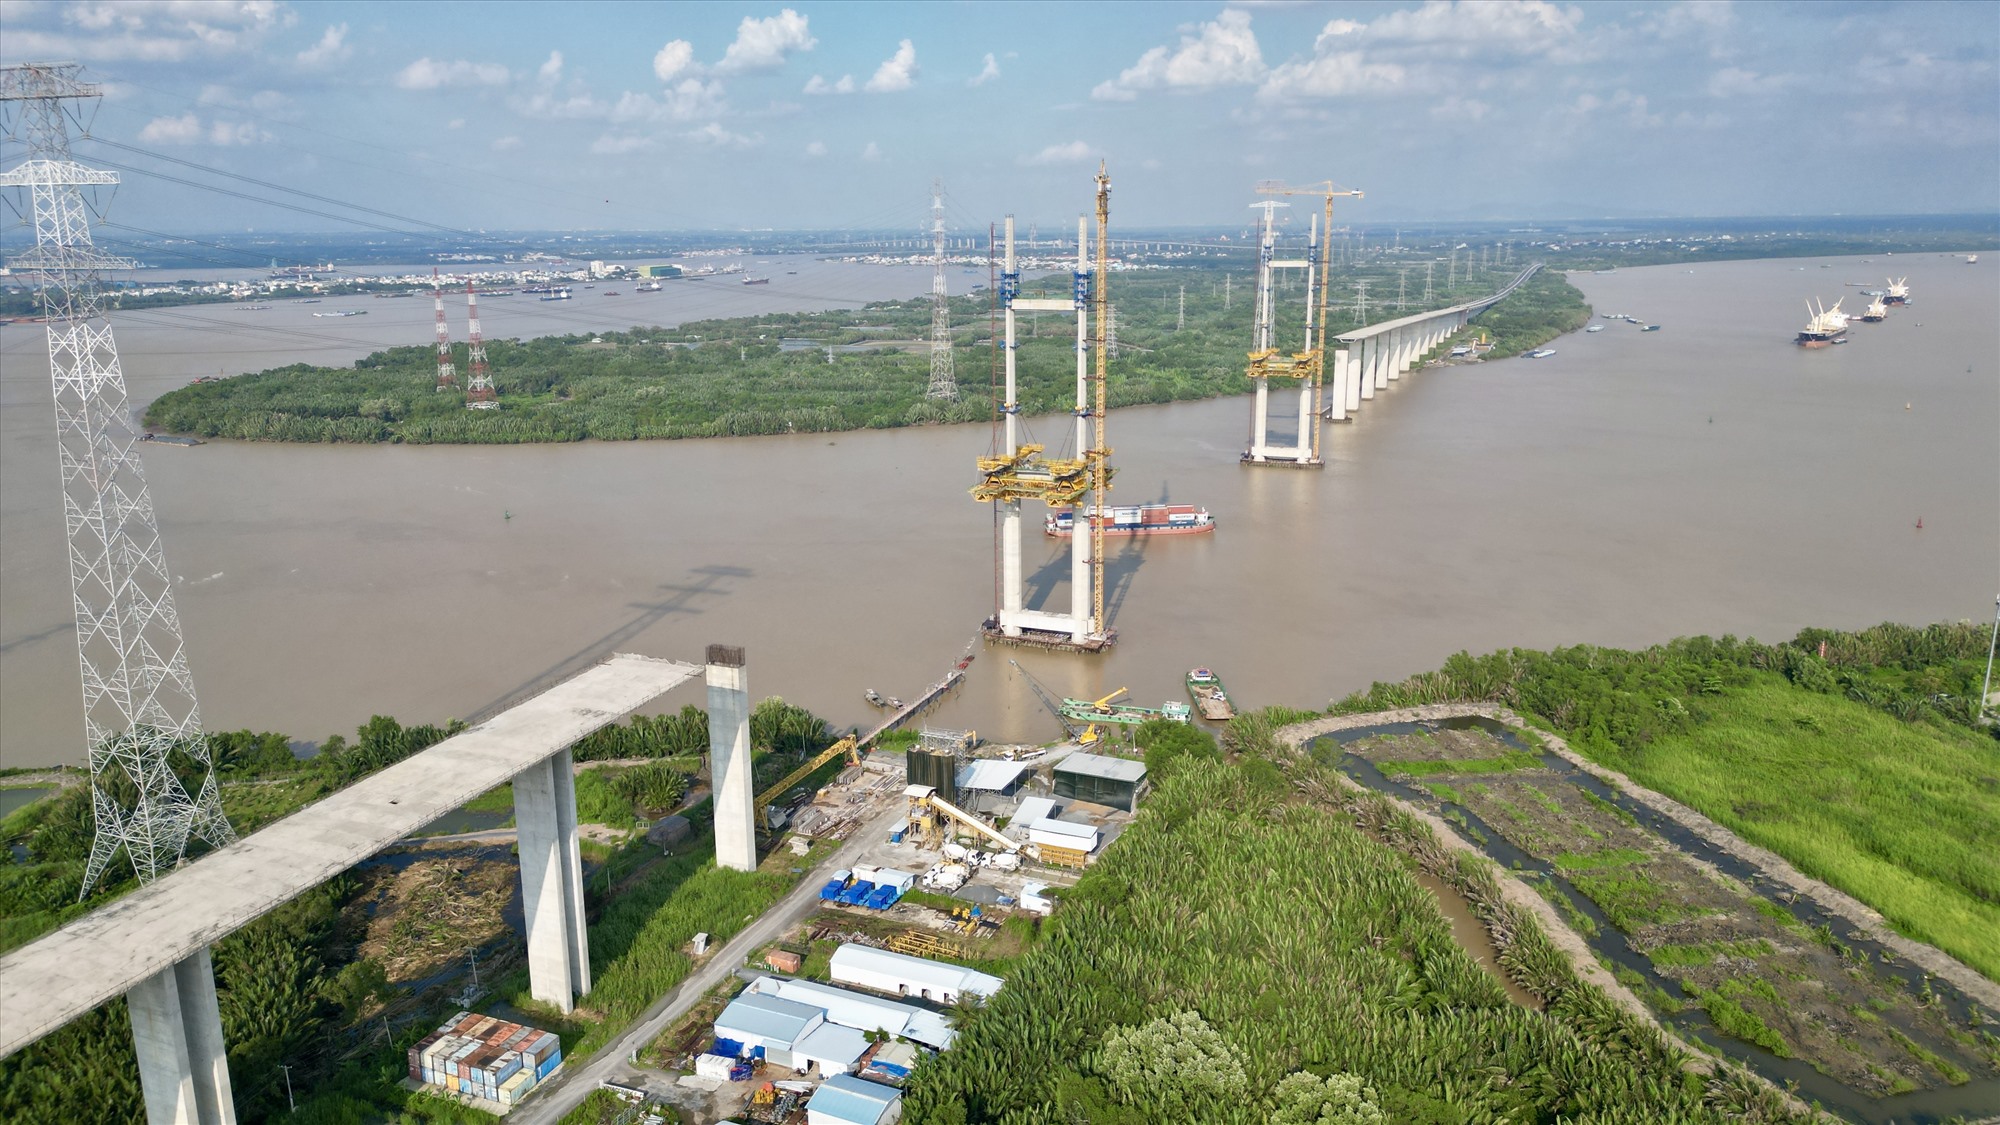 Tuyến cao tốc Bến Lức - Long Thành đi qua huyện Cần Giờ sẽ có điểm đầu tại cầu Bình Khánh. Đây cũng là ranh giới giữa huyện Nhà Bè và Cần Giờ.